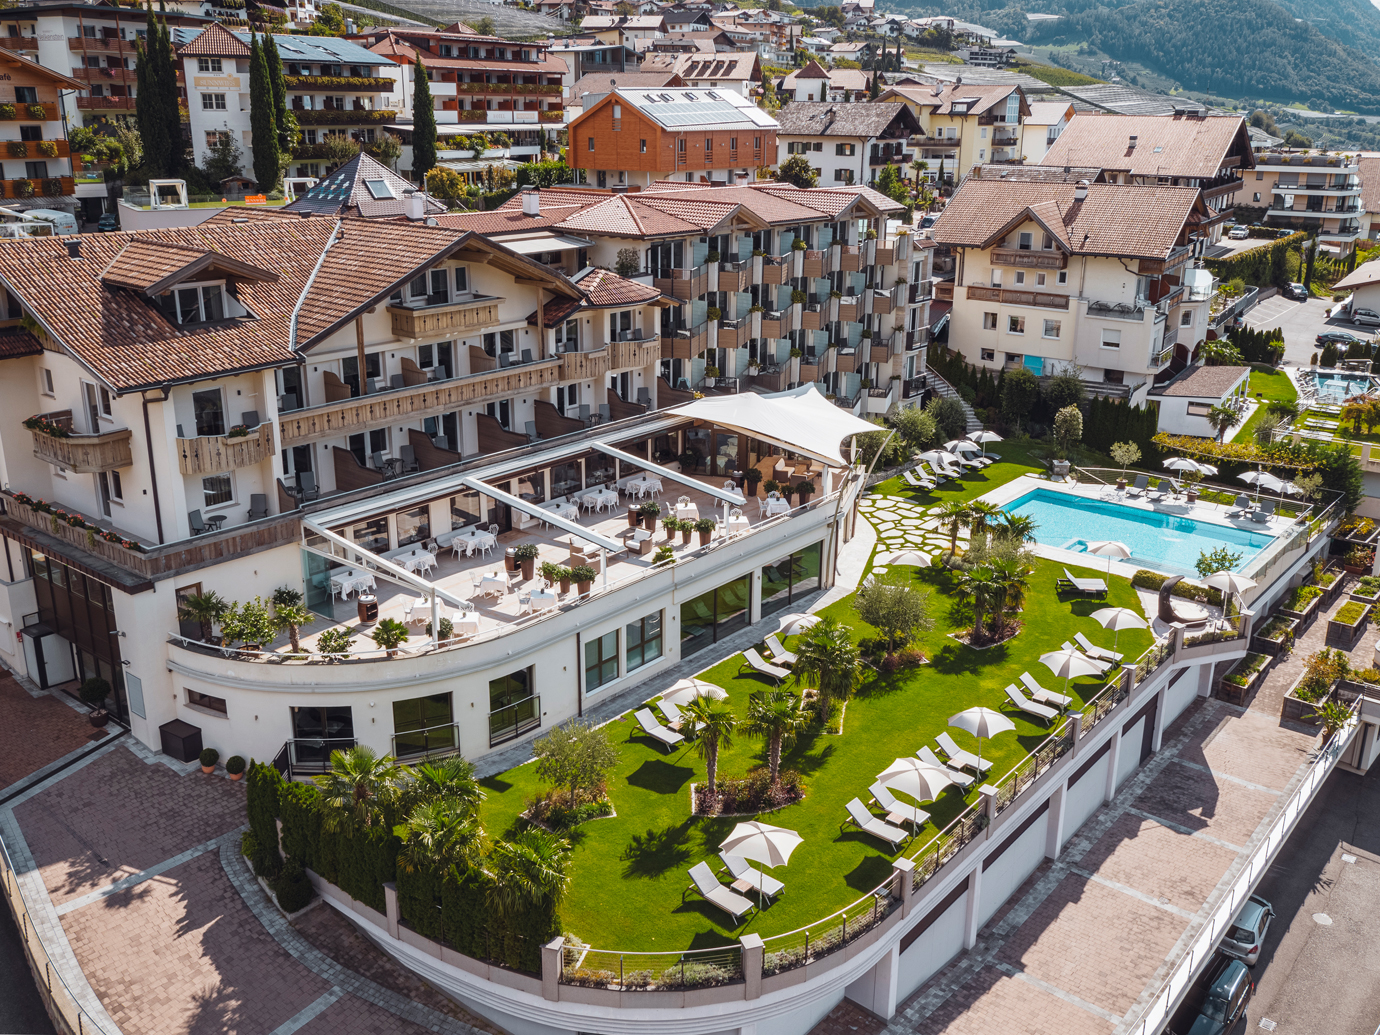  Hotel Resmairhof 39017 Schenna bei Meran/Bozen in Südtirol
